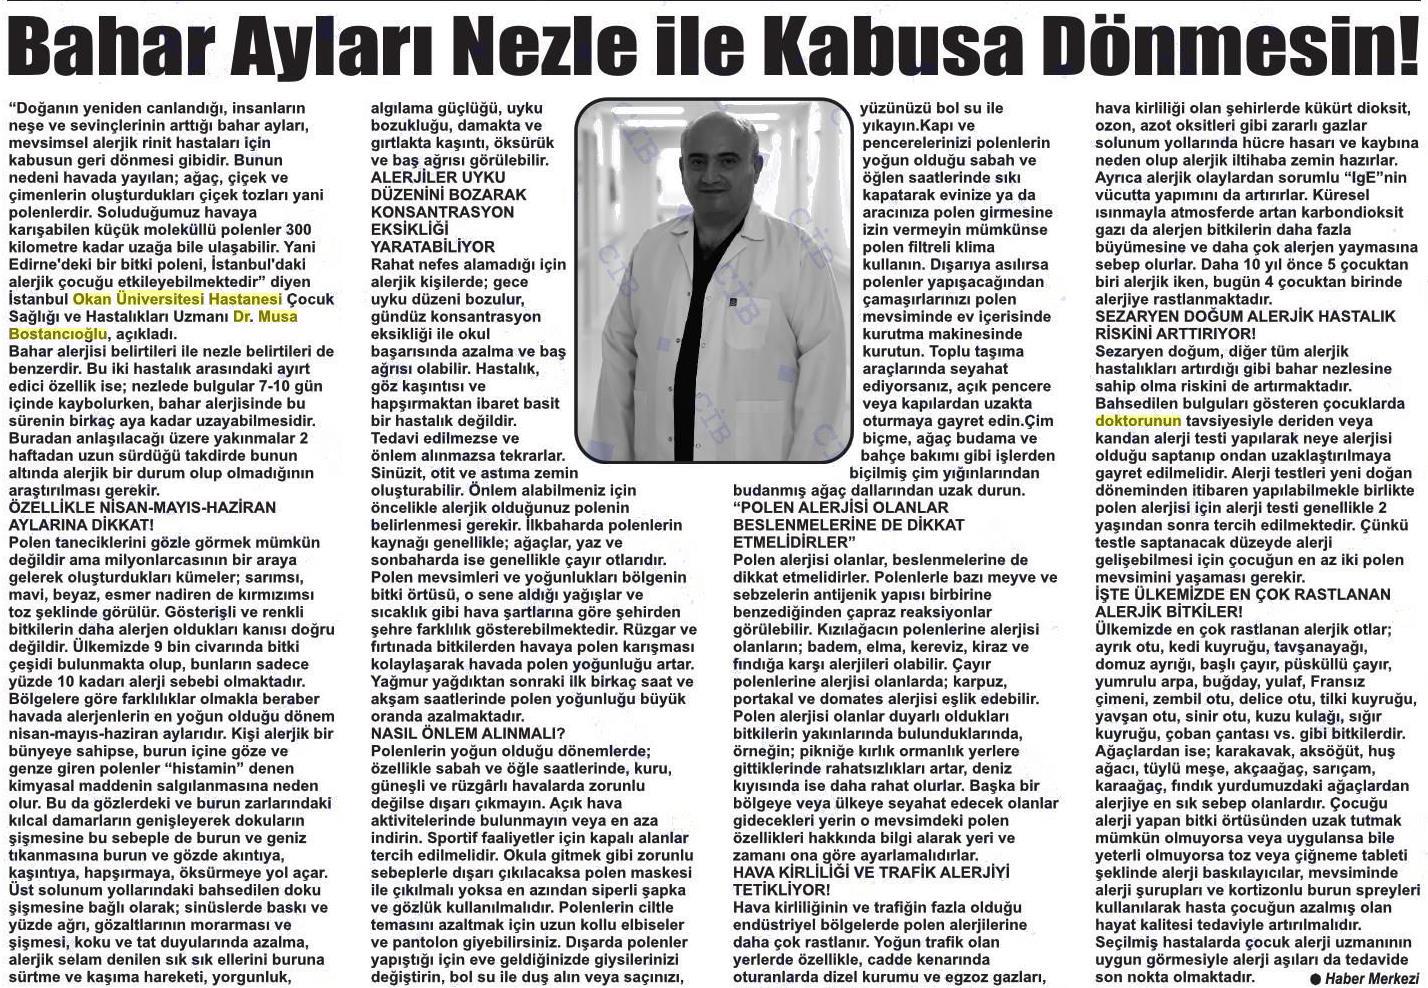 27.03.2019 Ereğli Gazetesi BAHAR AYLARI NEZLE İLE KABUSA DÖNMESİN!